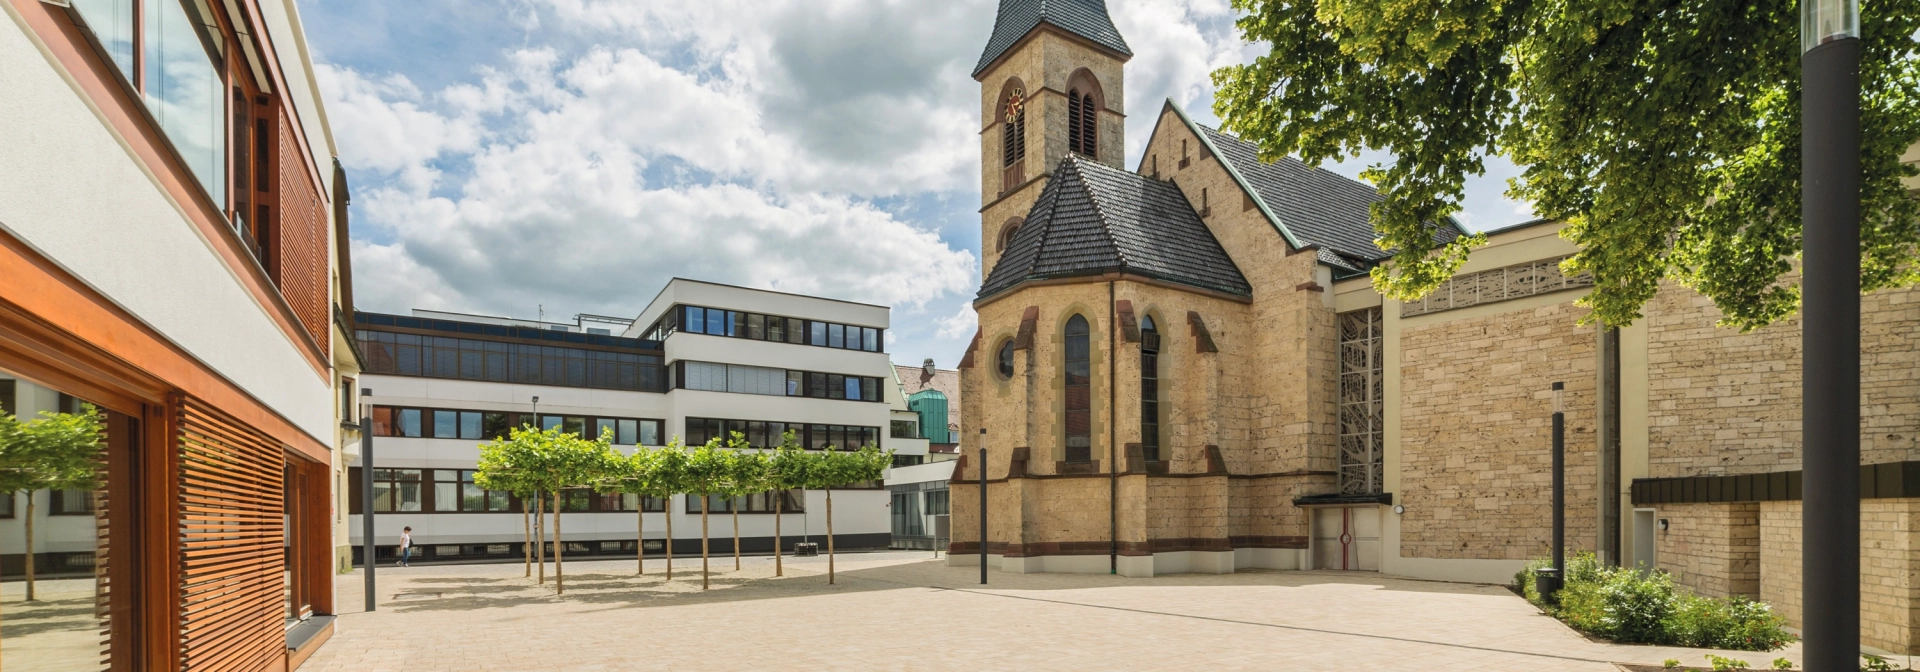 gepflasterter Kirchenvorplatz mit modernen Gebäuden und historischer Kirche